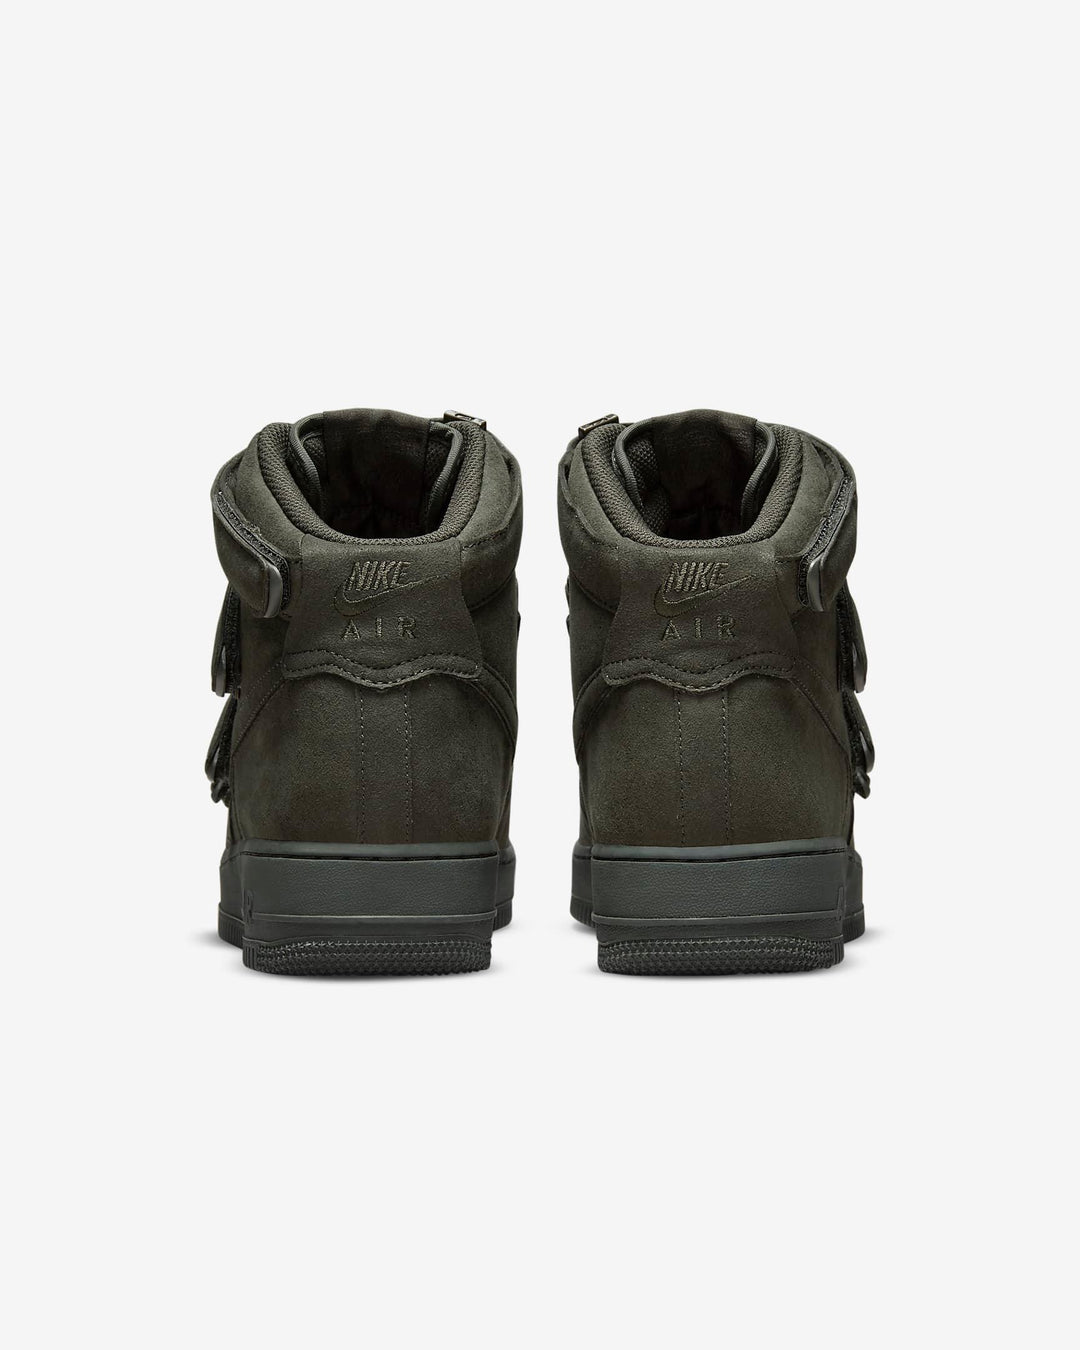 Giày Nike Air Force 1 High '07 SP Billie Eilish Men Shoes #Sequoia - Kallos Vietnam